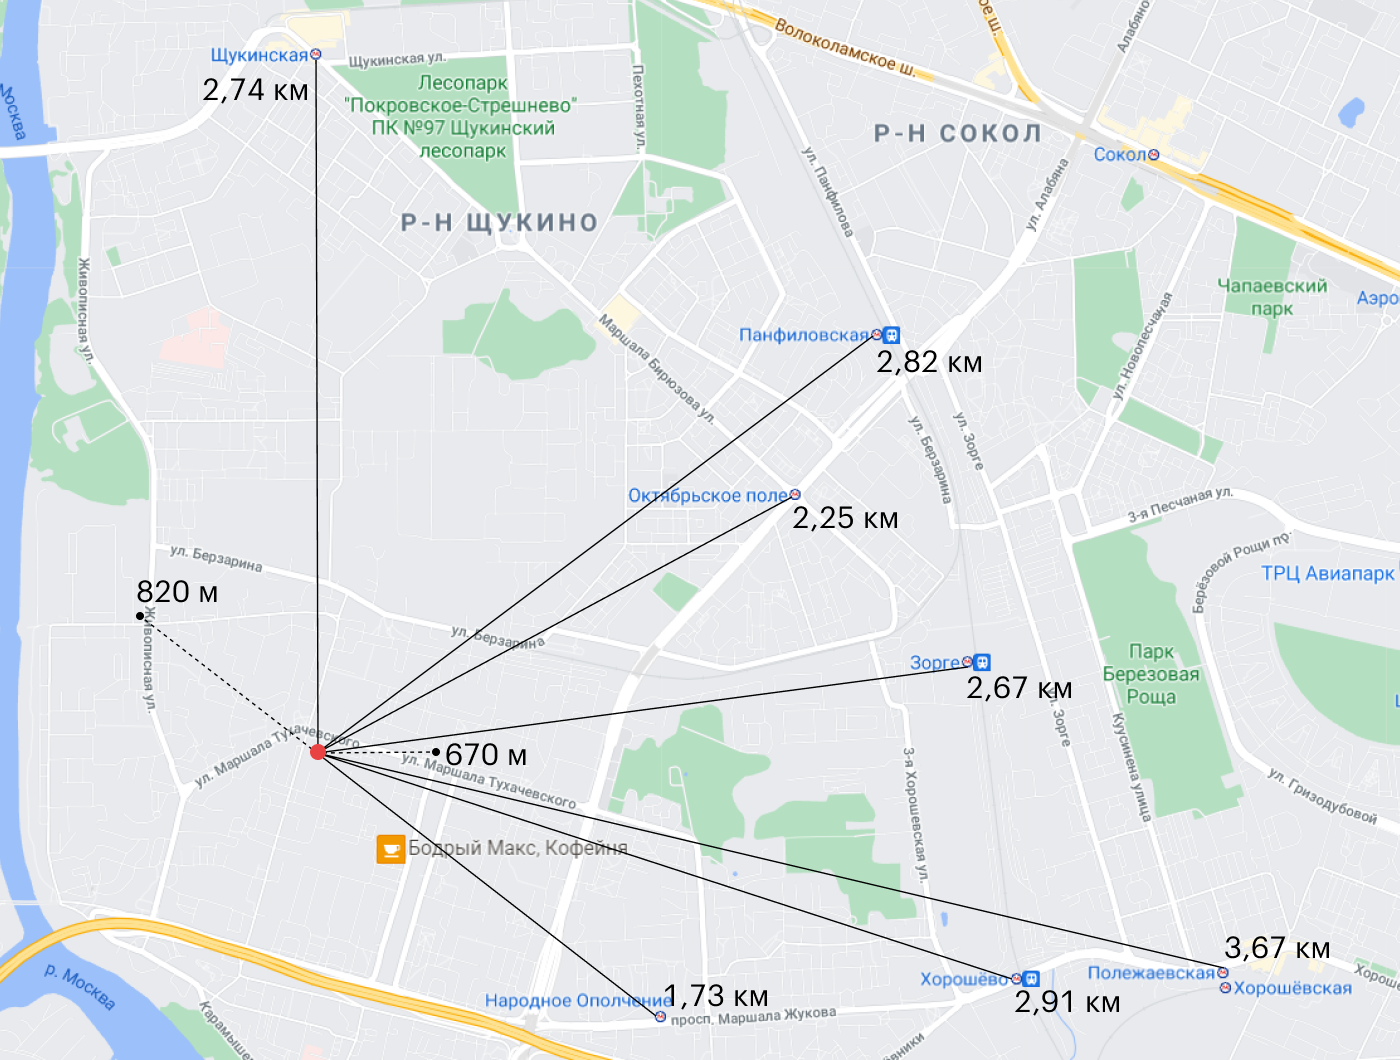 Пока от моего дома до действующих станций 1,73⁠—⁠2,74 км. А новые будут гораздо ближе — расстояние до них я отметил пунктиром